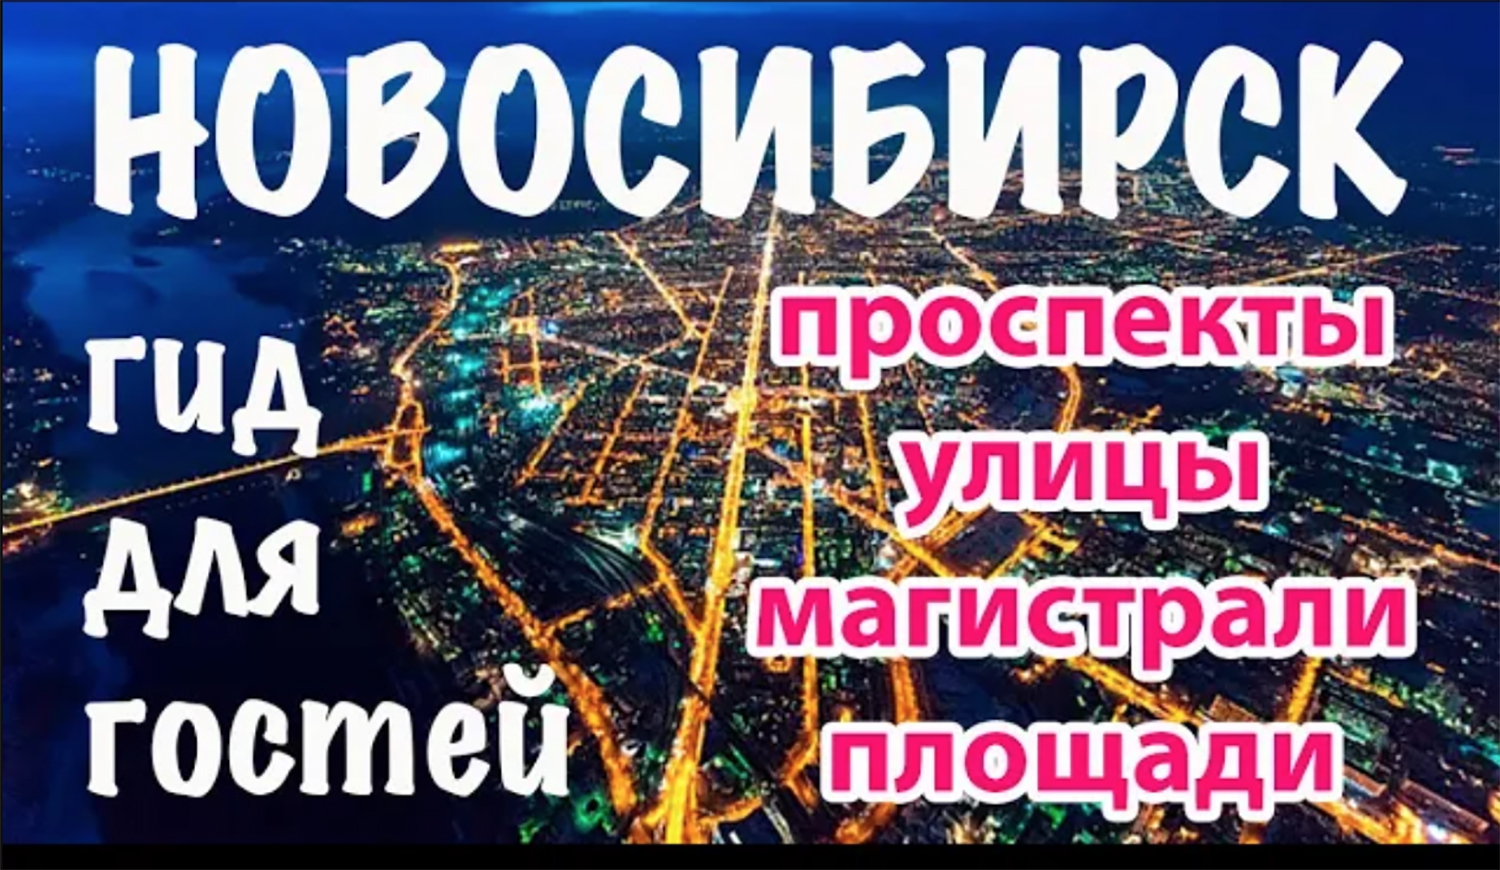 Новосибирск: география для гостей, туристические районы города, главные улицы и площади, метро.